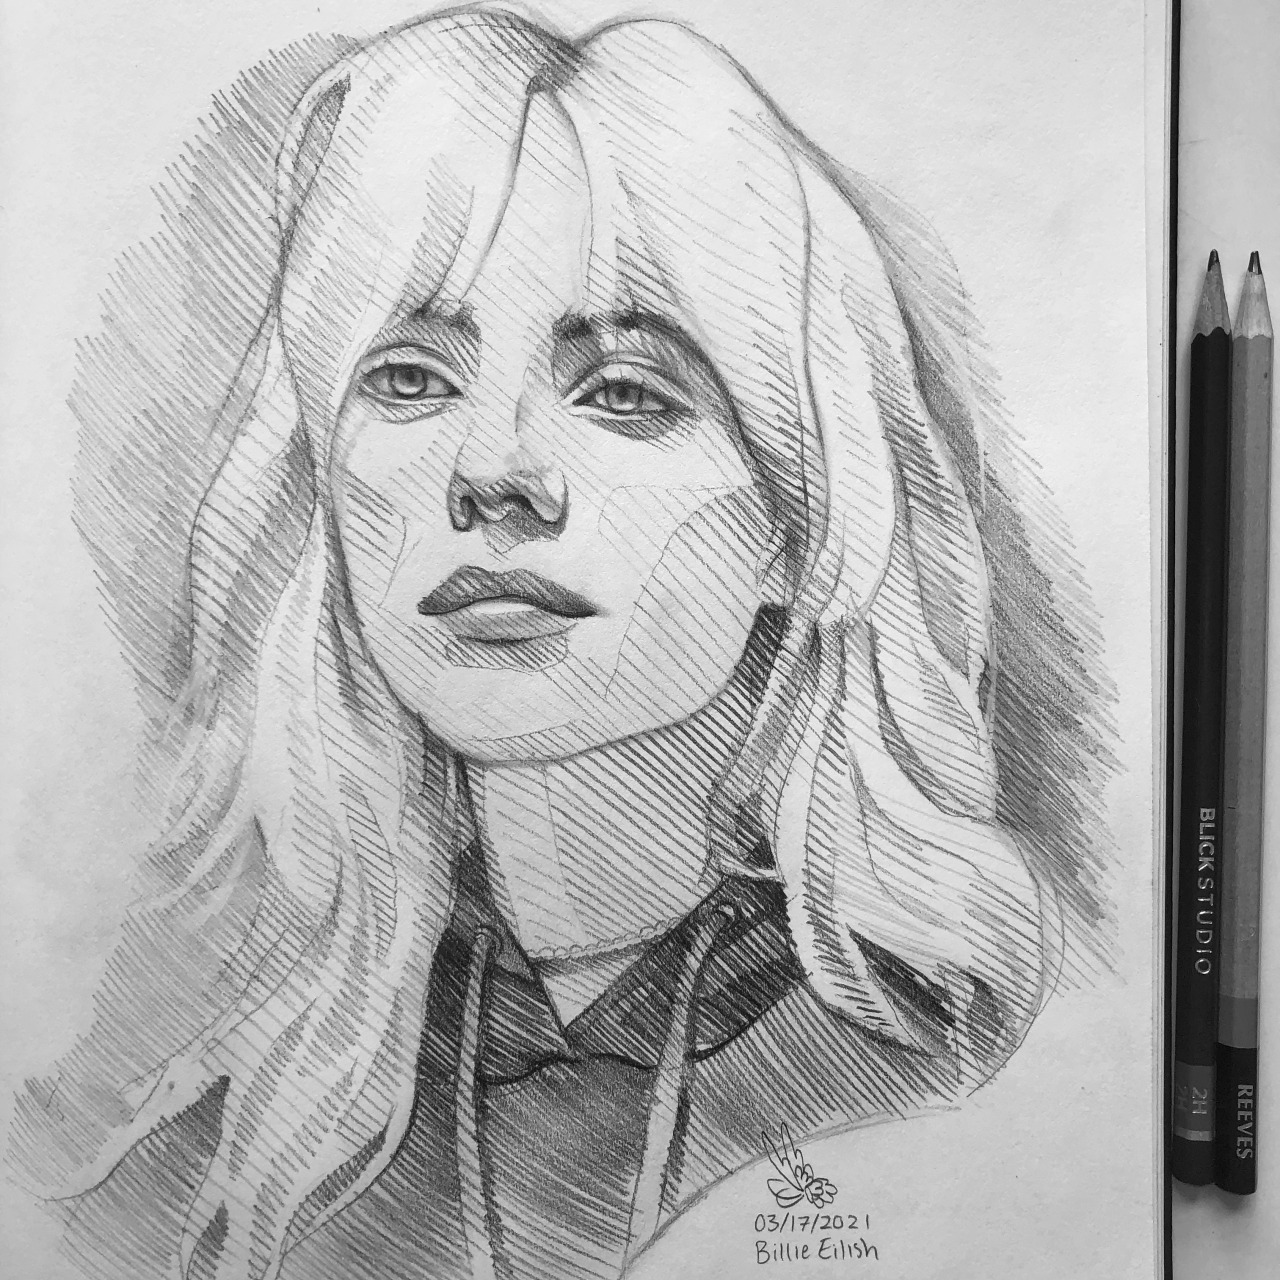 Billie Eilish Pencil Drawing by sinthadj on DeviantArt